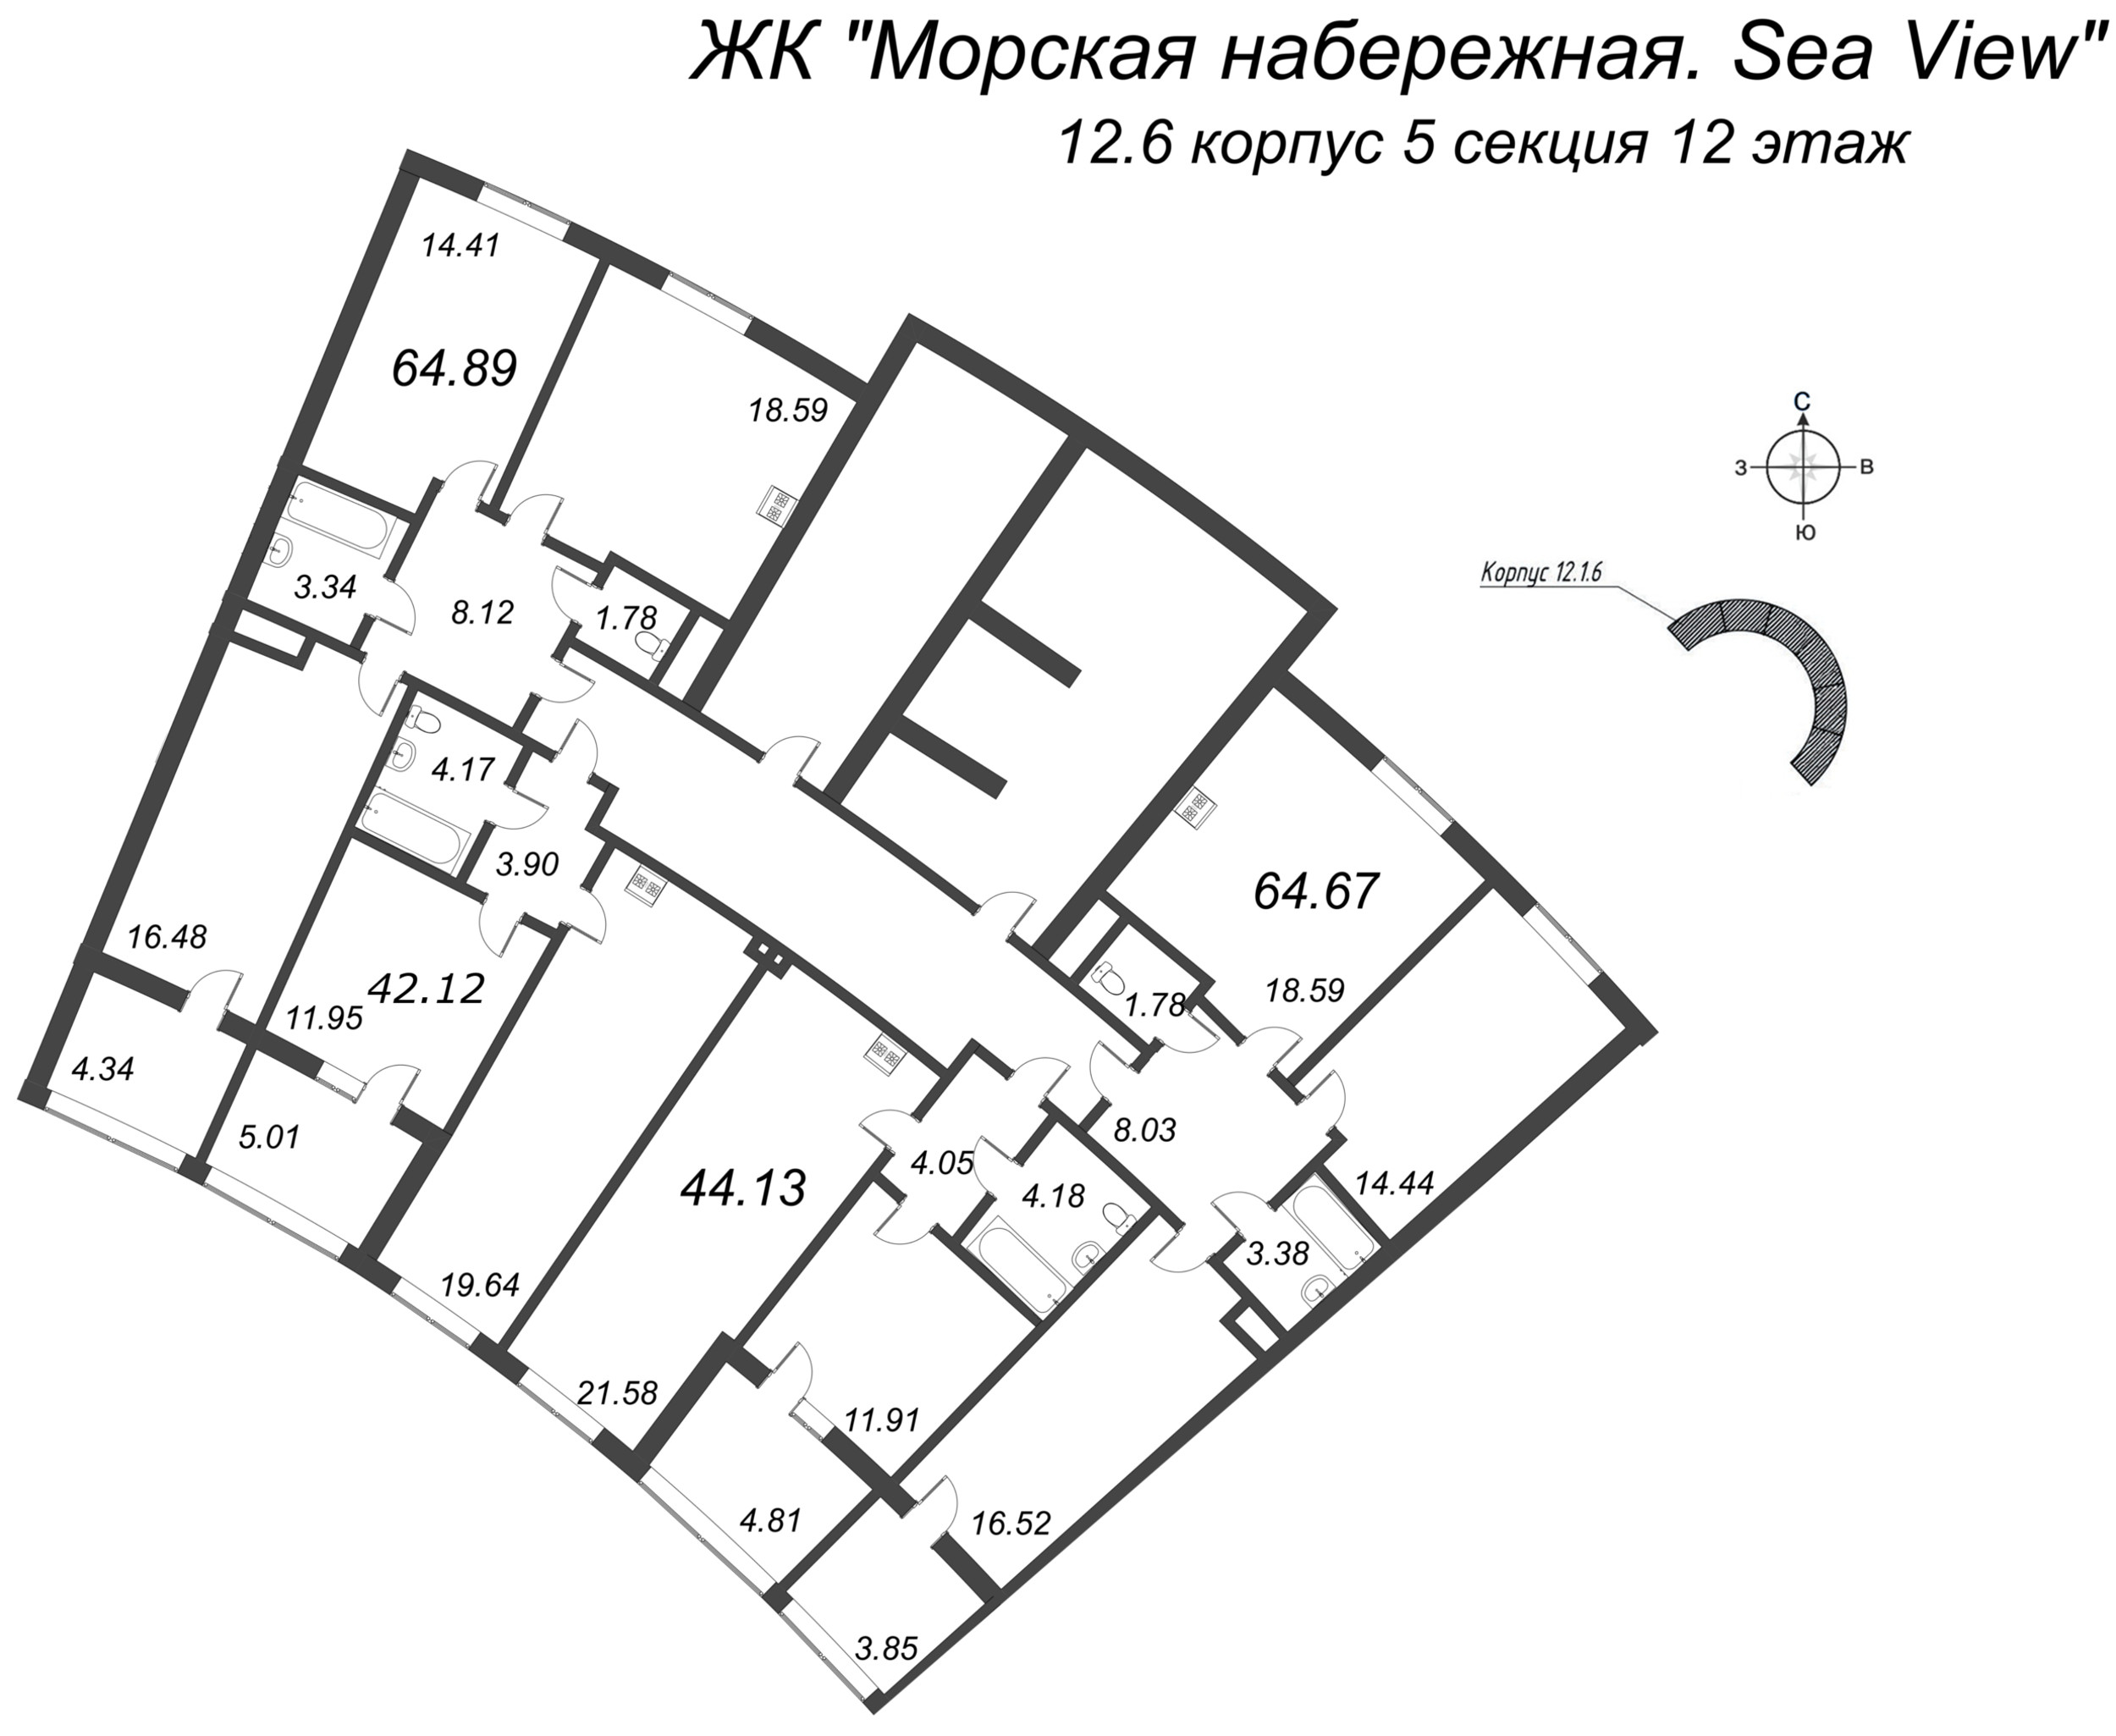 2-комнатная (Евро) квартира, 42.17 м² в ЖК "Морская набережная. SeaView" - планировка этажа